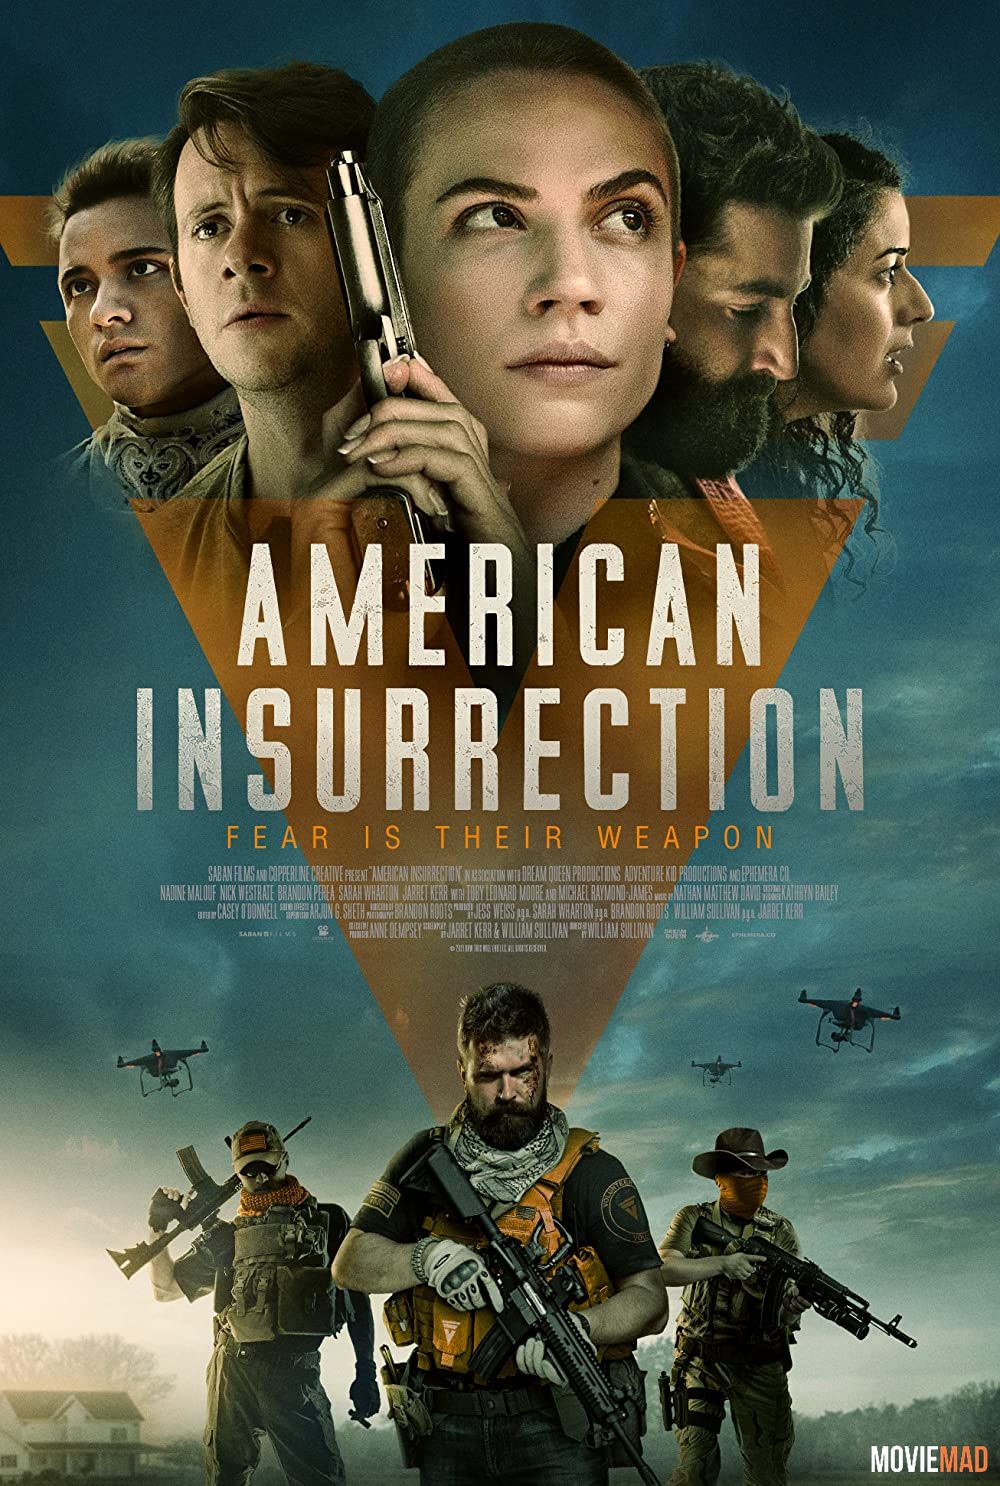 full moviesAmerican Insurrection 2021 English AMZN HDRip Full Movie 720p 480p